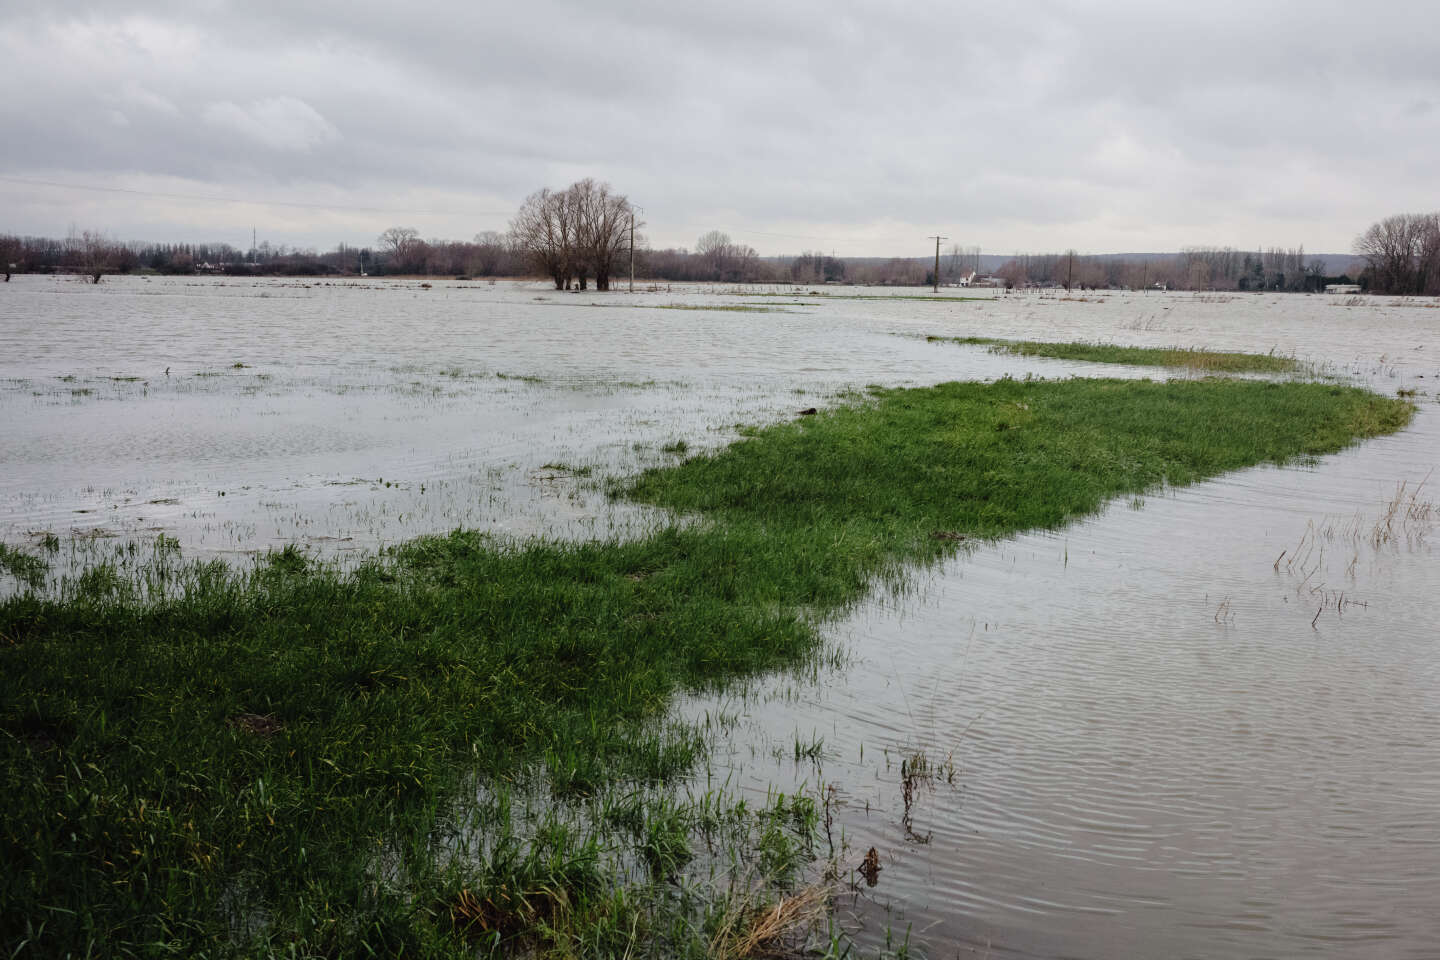 Inondations dans le Pas-de-Calais : l’organisme gérant les wateringues appelle à l’aide